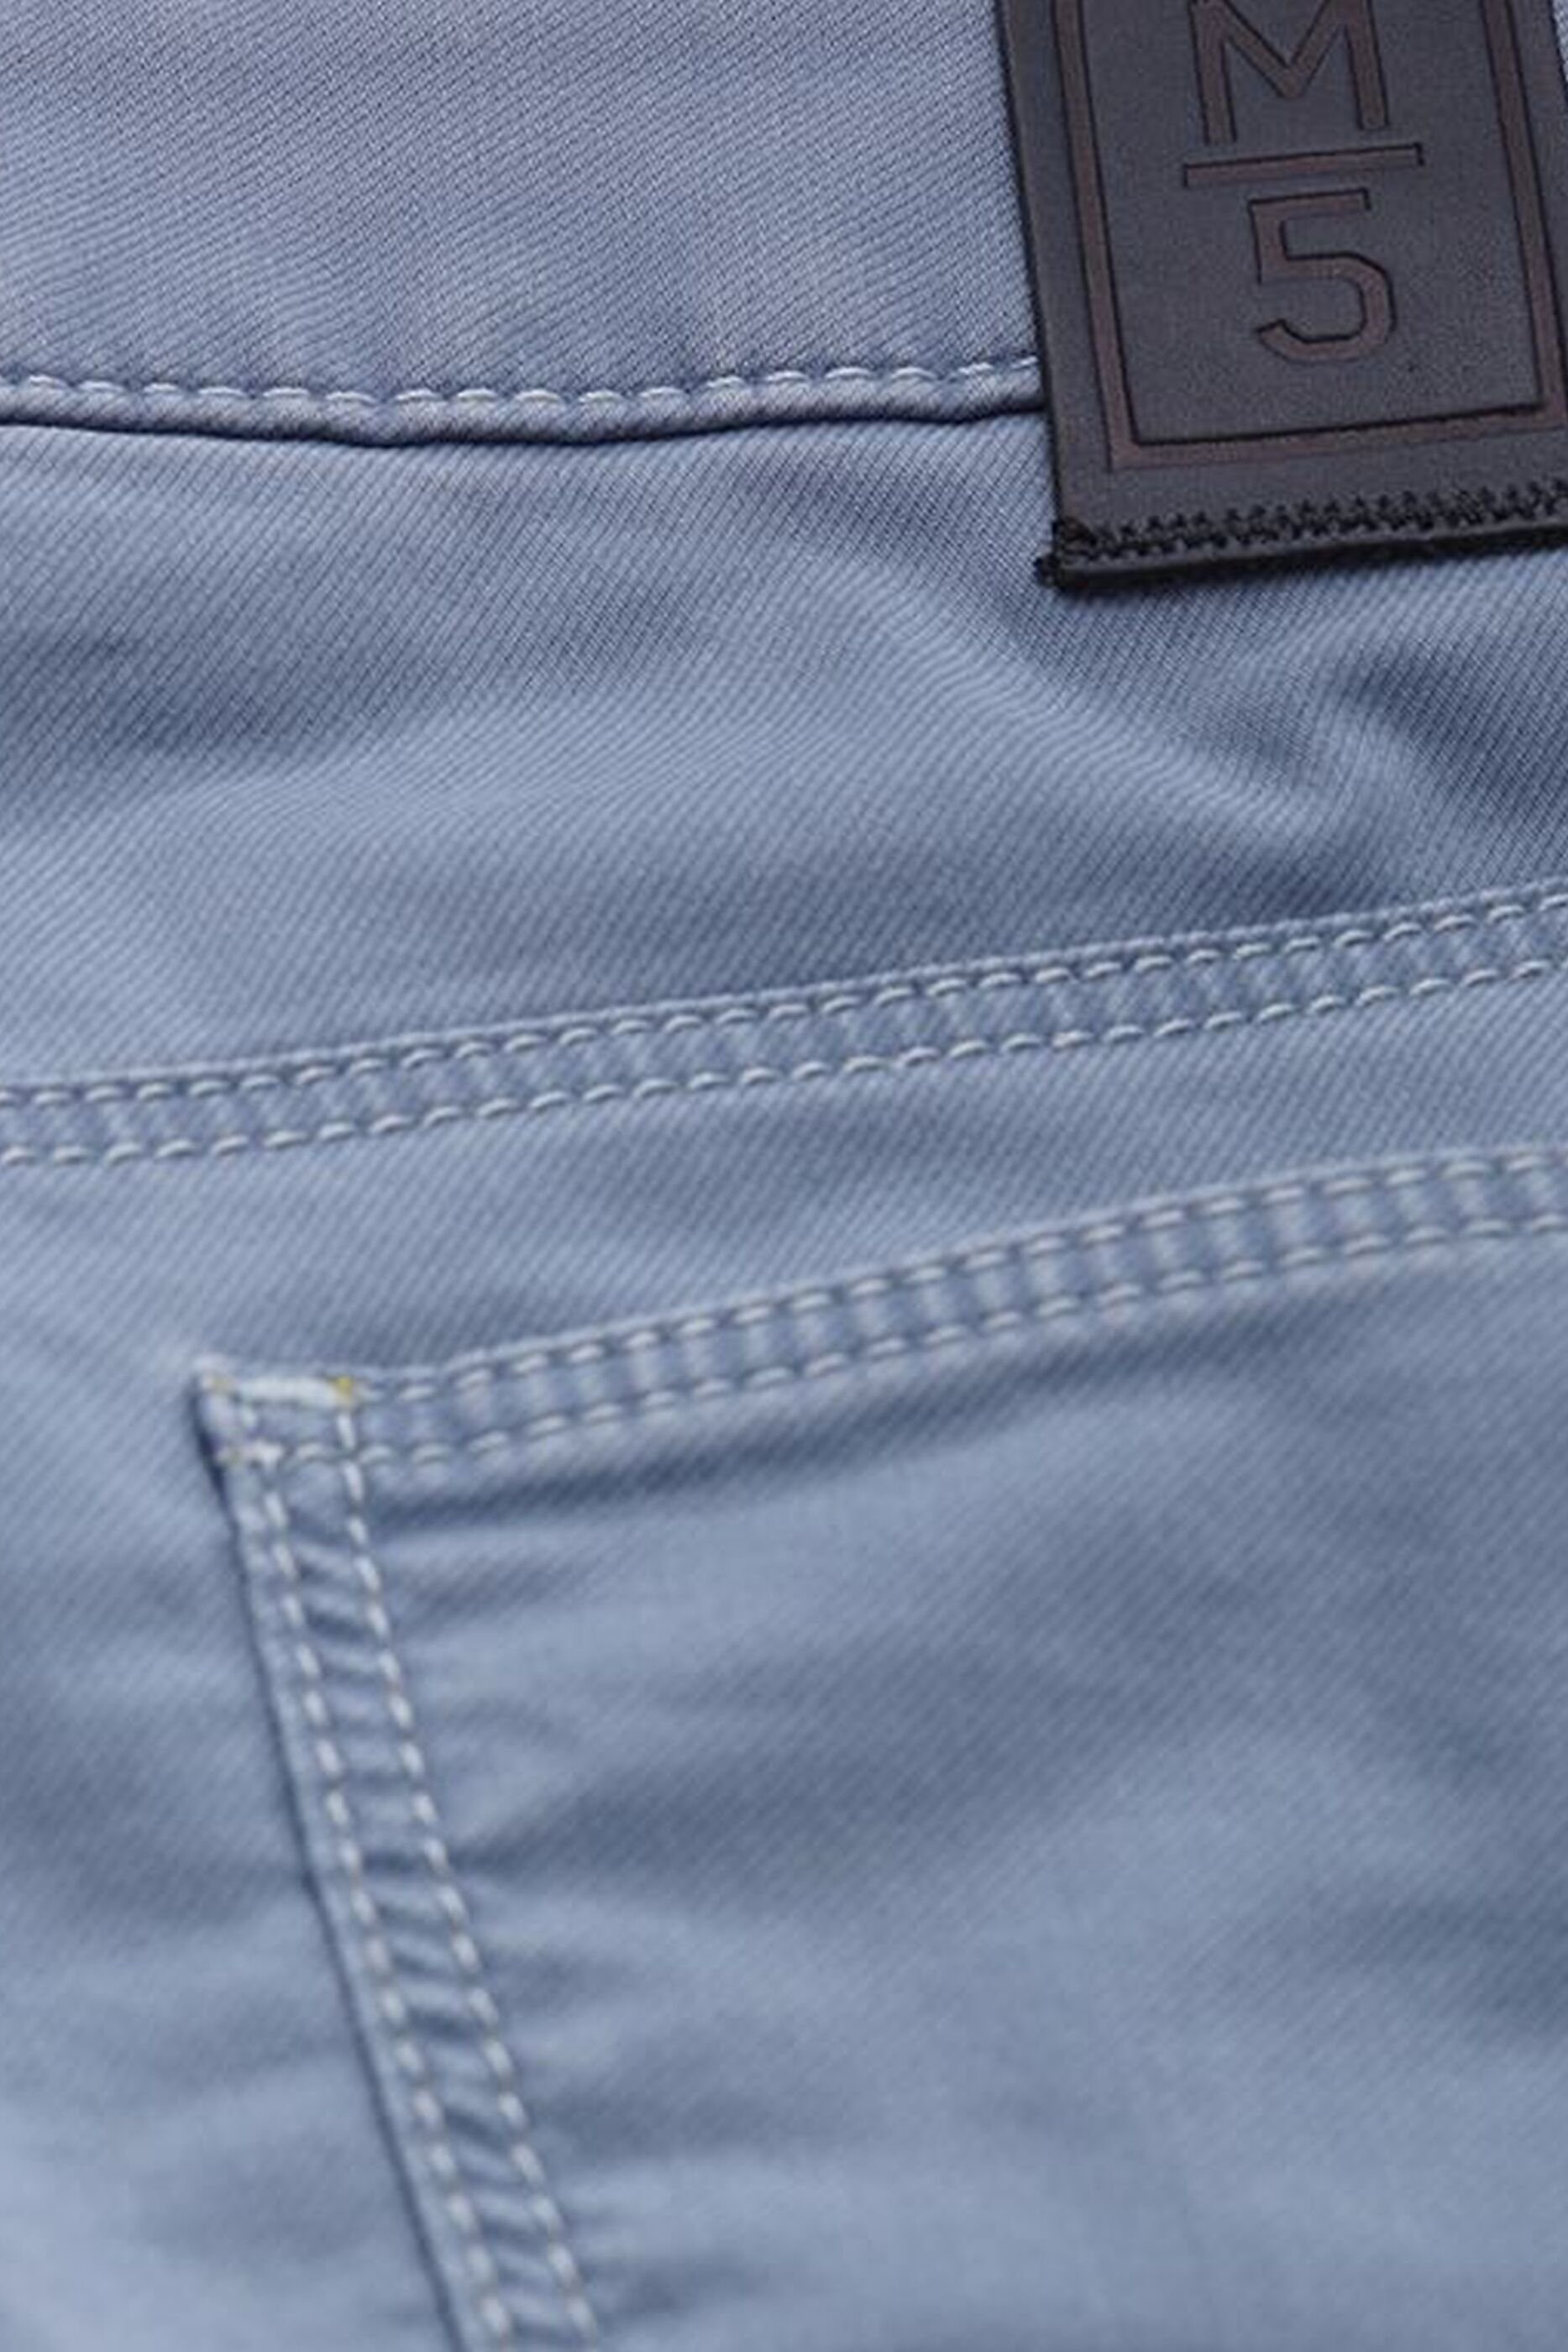 Produktion blau aus 'M5' MEYER Slim-fit-Jeans europäischer